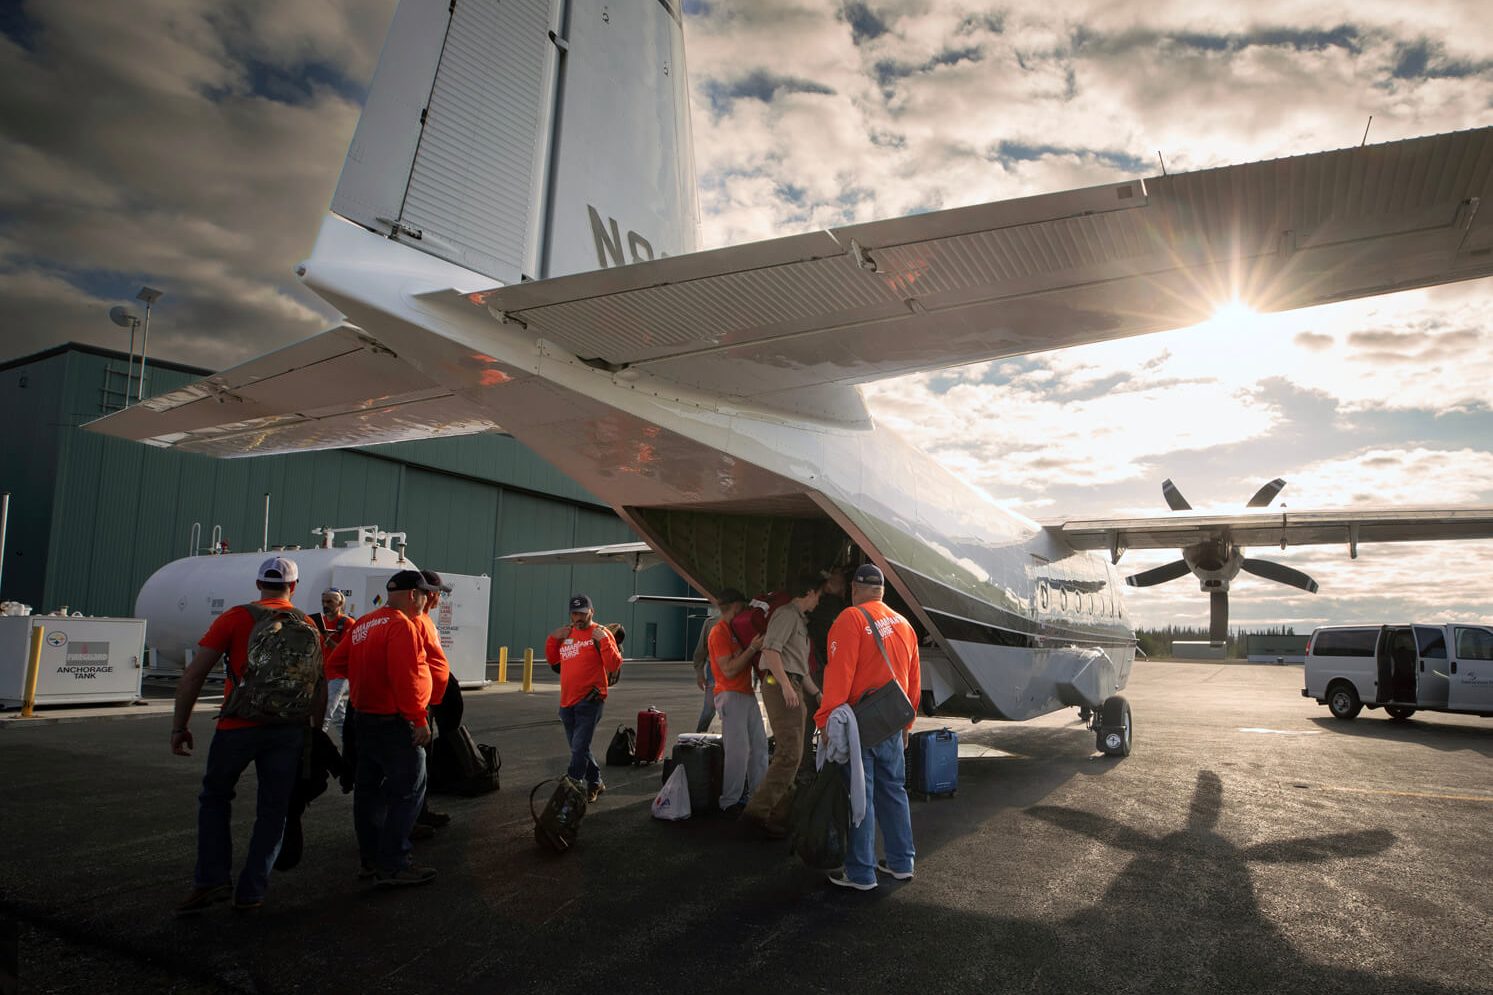 The volunteer team from Lincolnton, North Carolina, prepares to board a Samaritan's Purse aviation flight from Soldotna to Koyuk, Alaska.